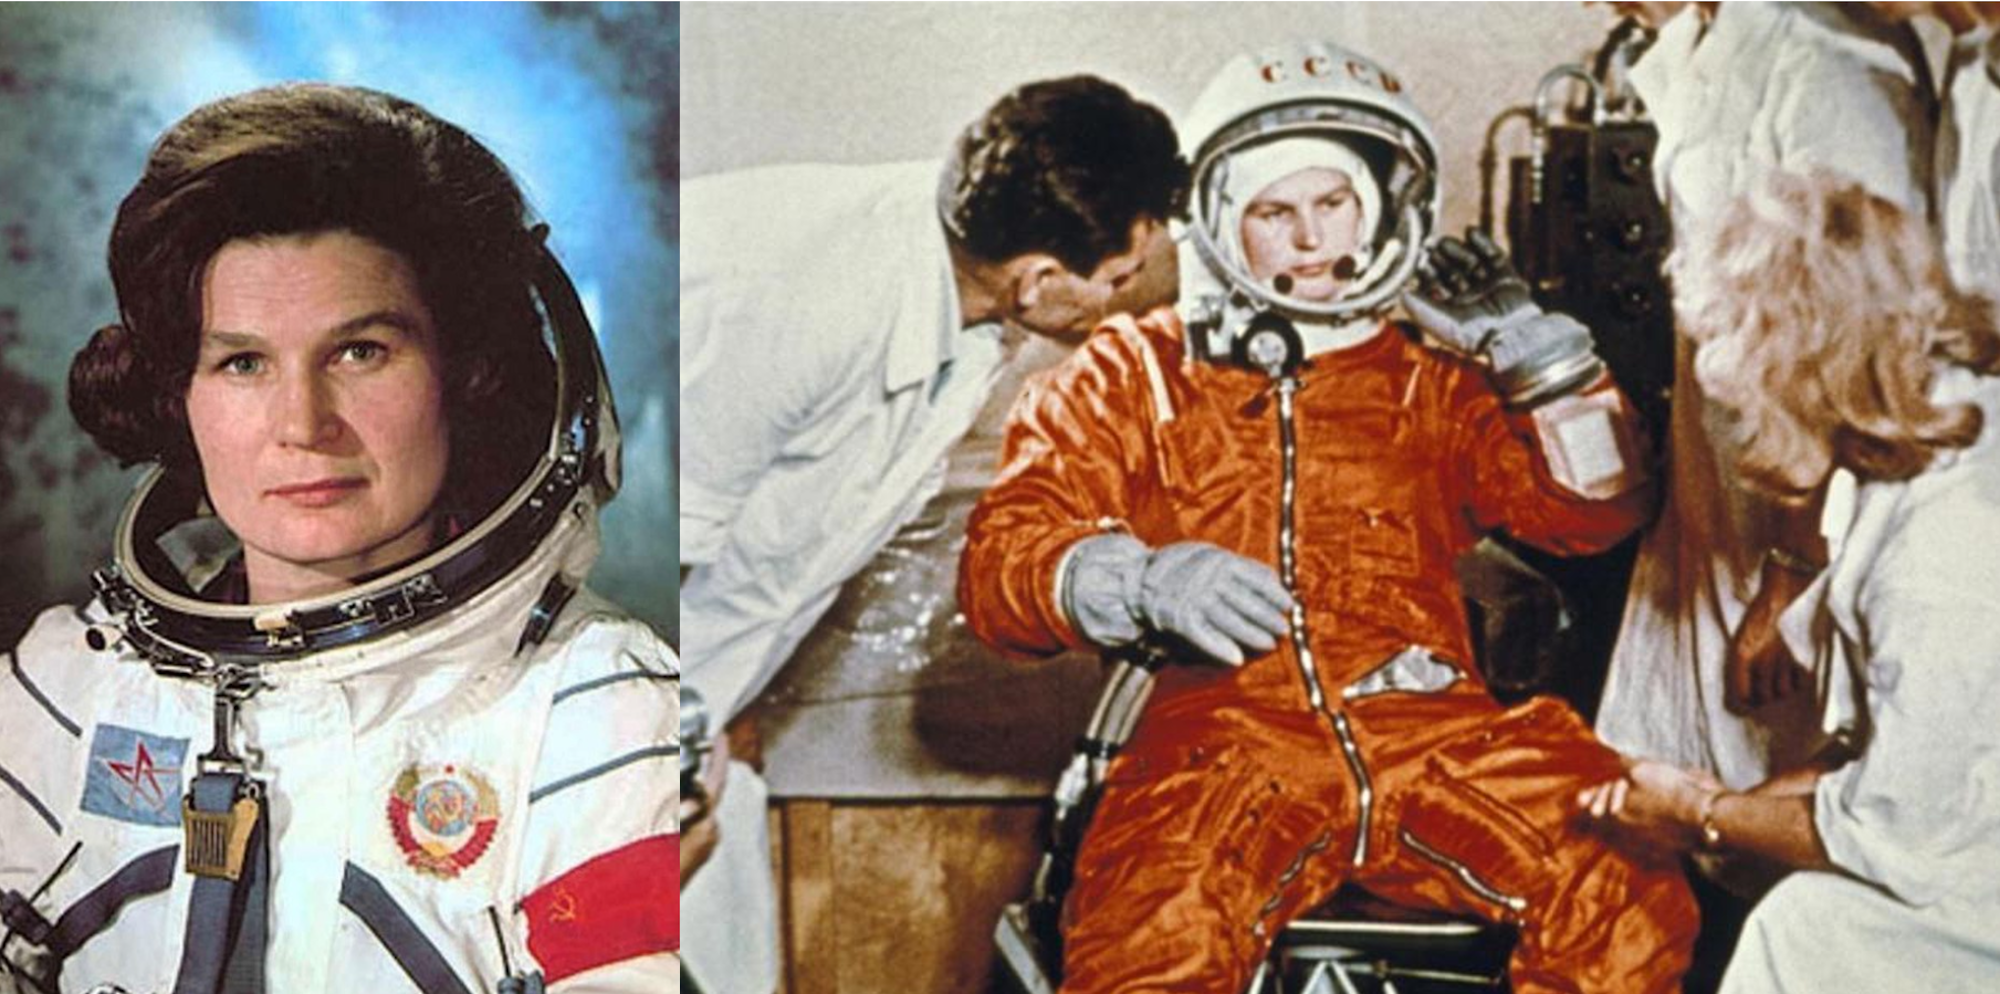 Bí mật giấu kín gần 50 năm của người phụ nữ đầu tiên bay vào vũ trụ - 2